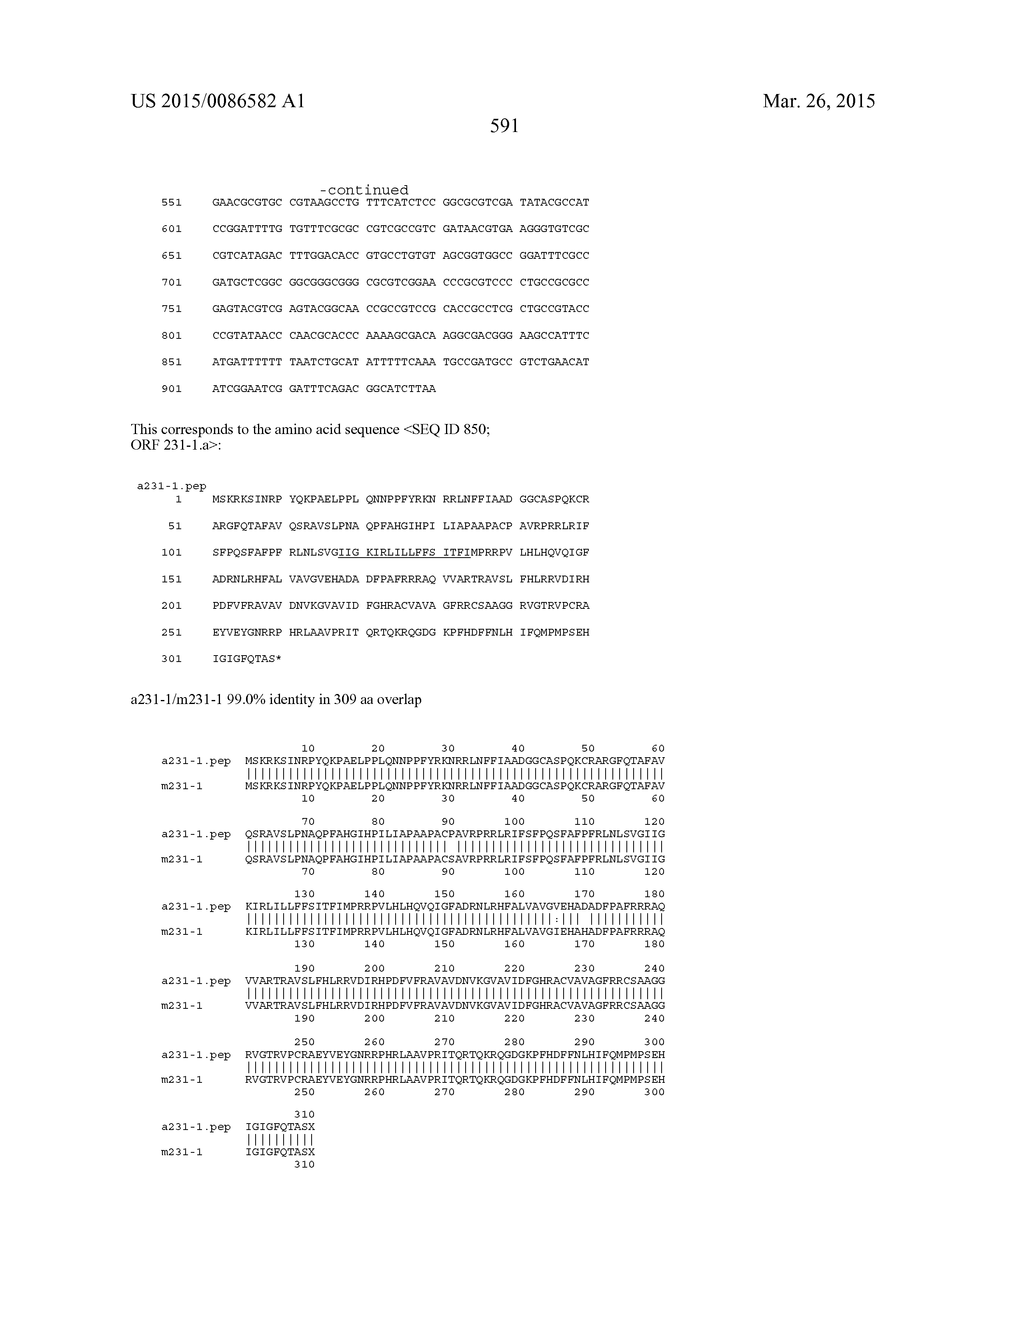 NEISSERIA MENINGITIDIS ANTIGENS AND COMPOSITIONS - diagram, schematic, and image 623